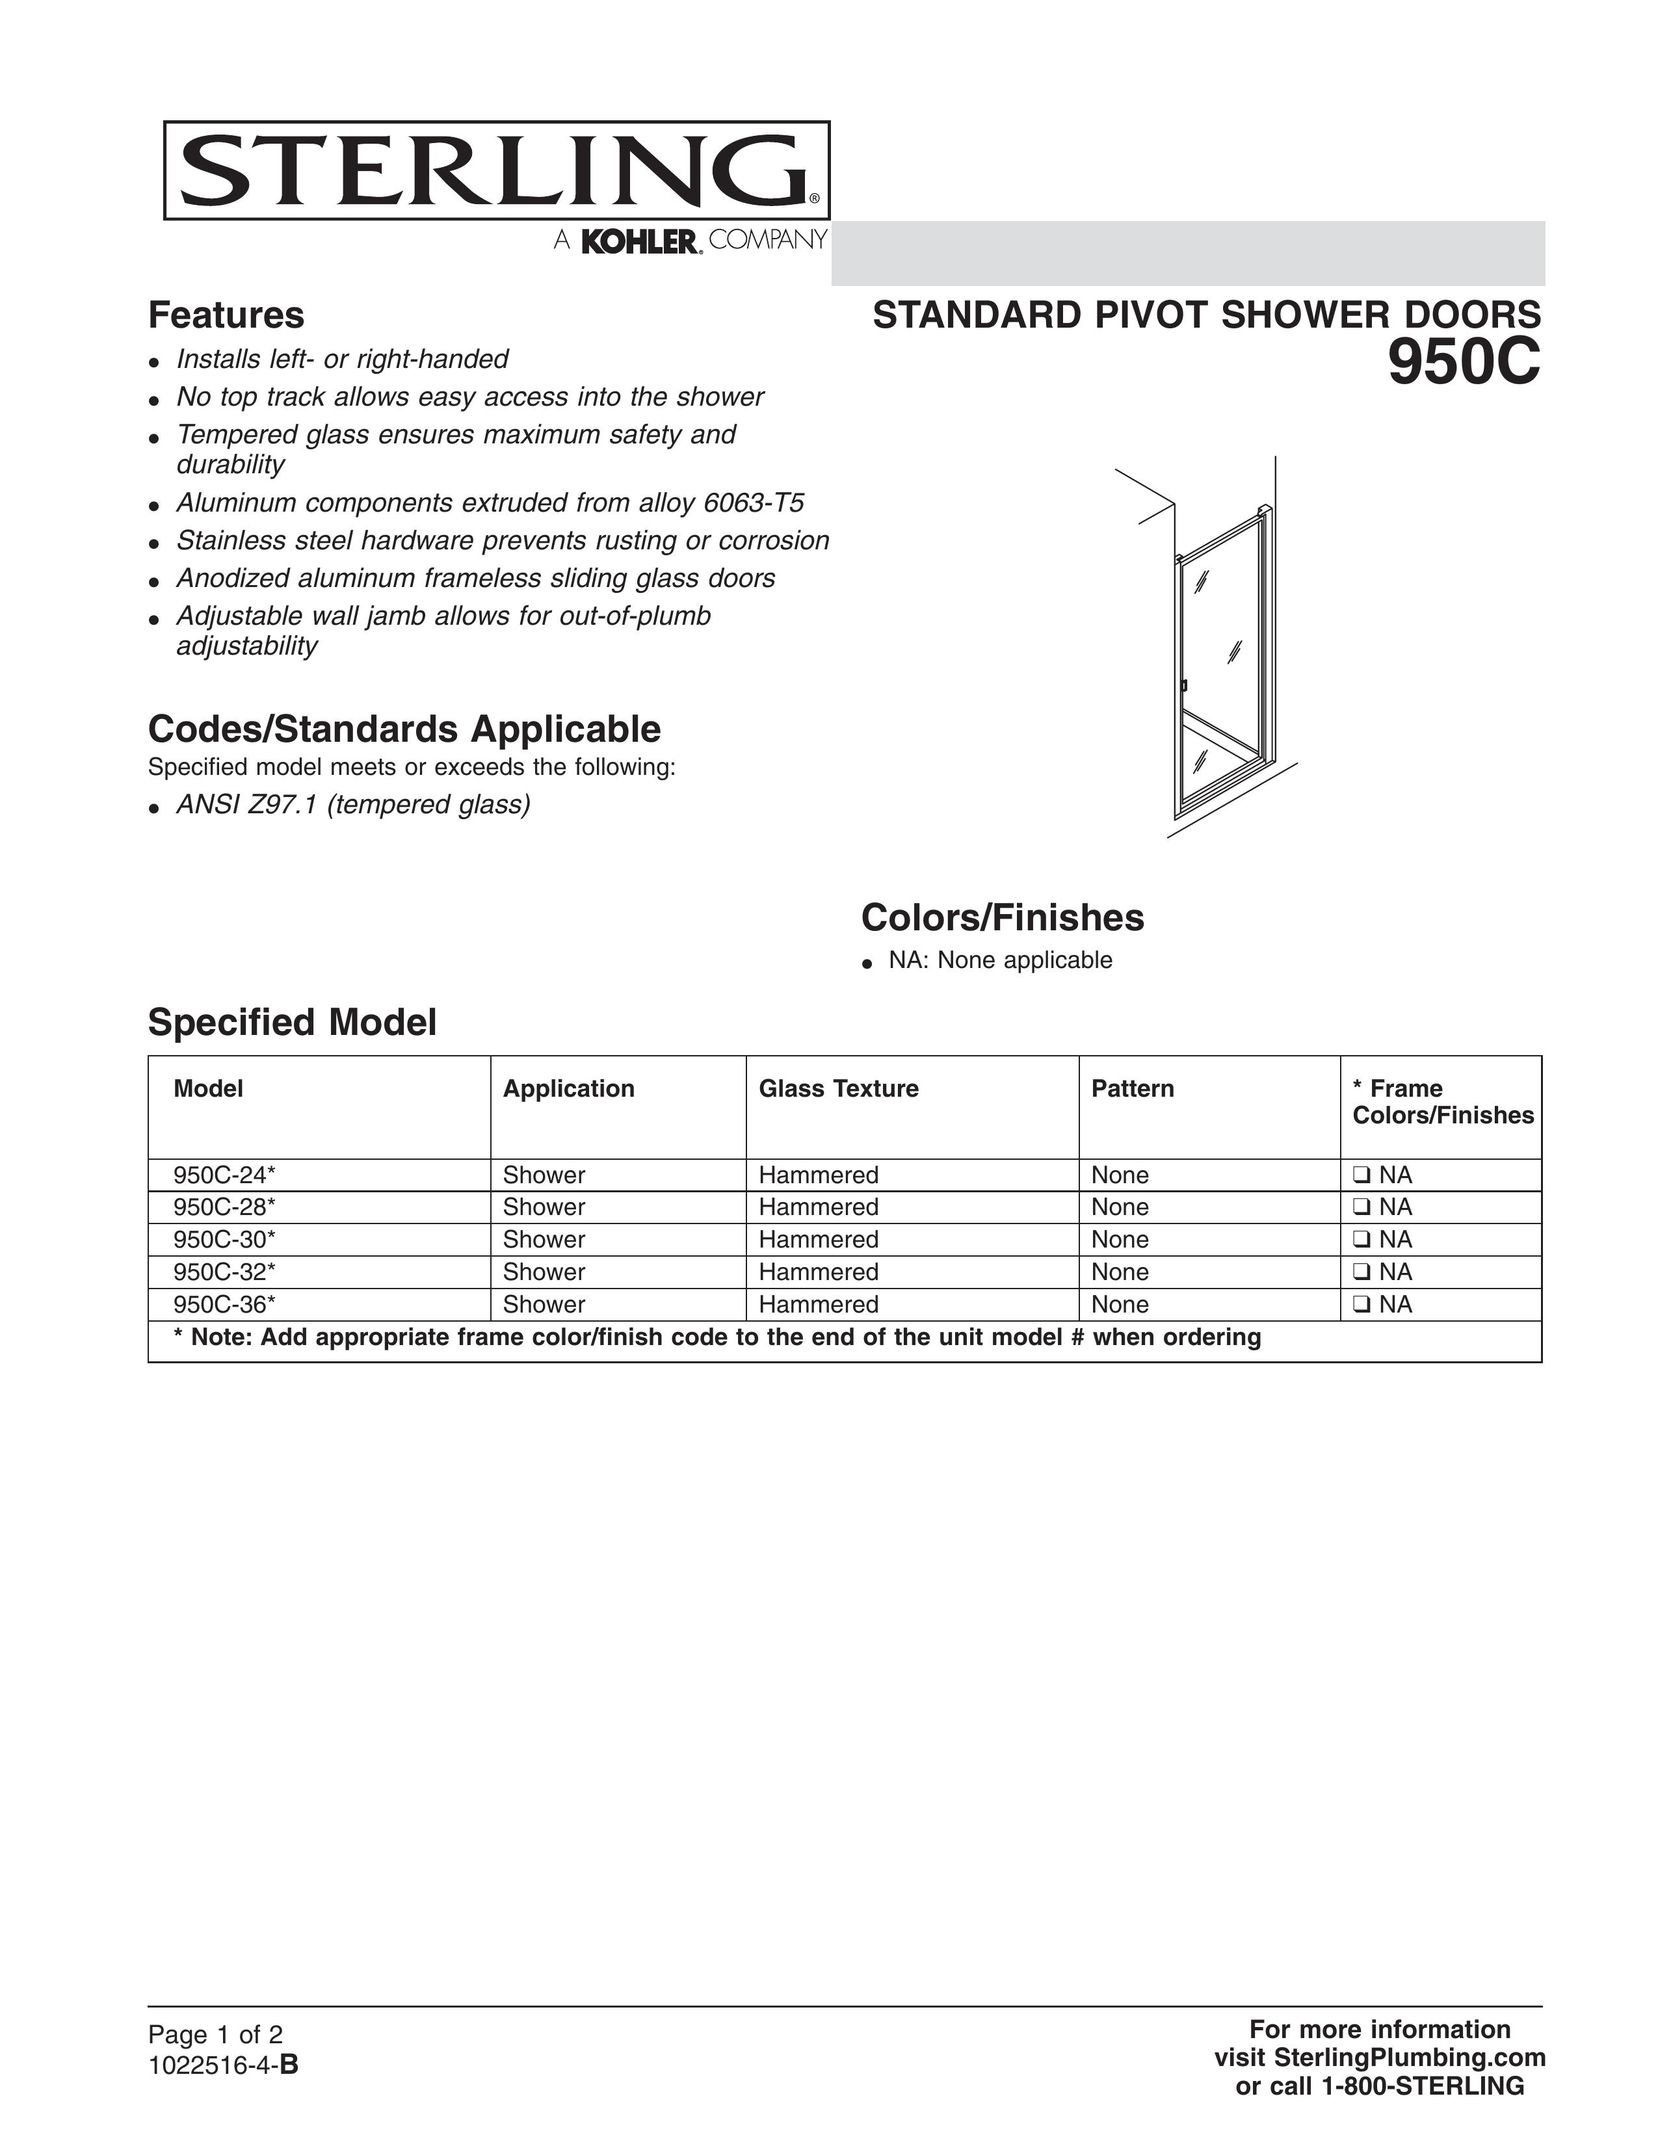 Sterling Plumbing 950C-30* Door User Manual